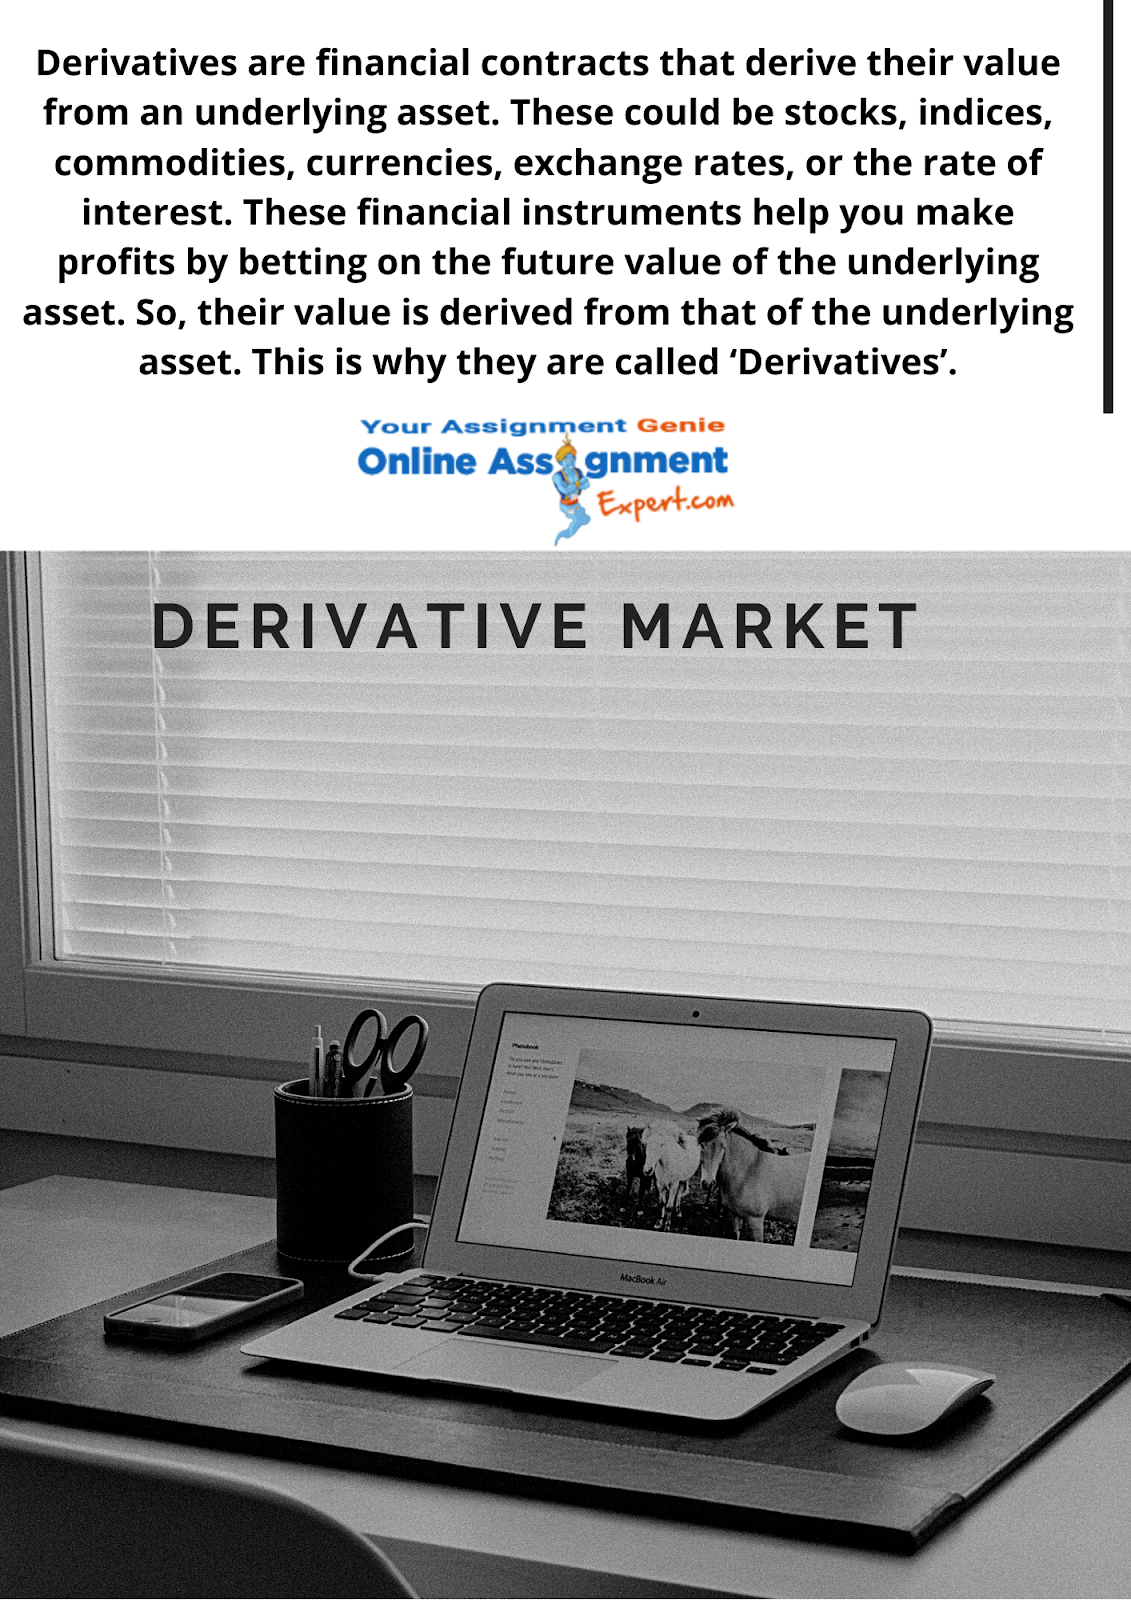 derivative market assignment help